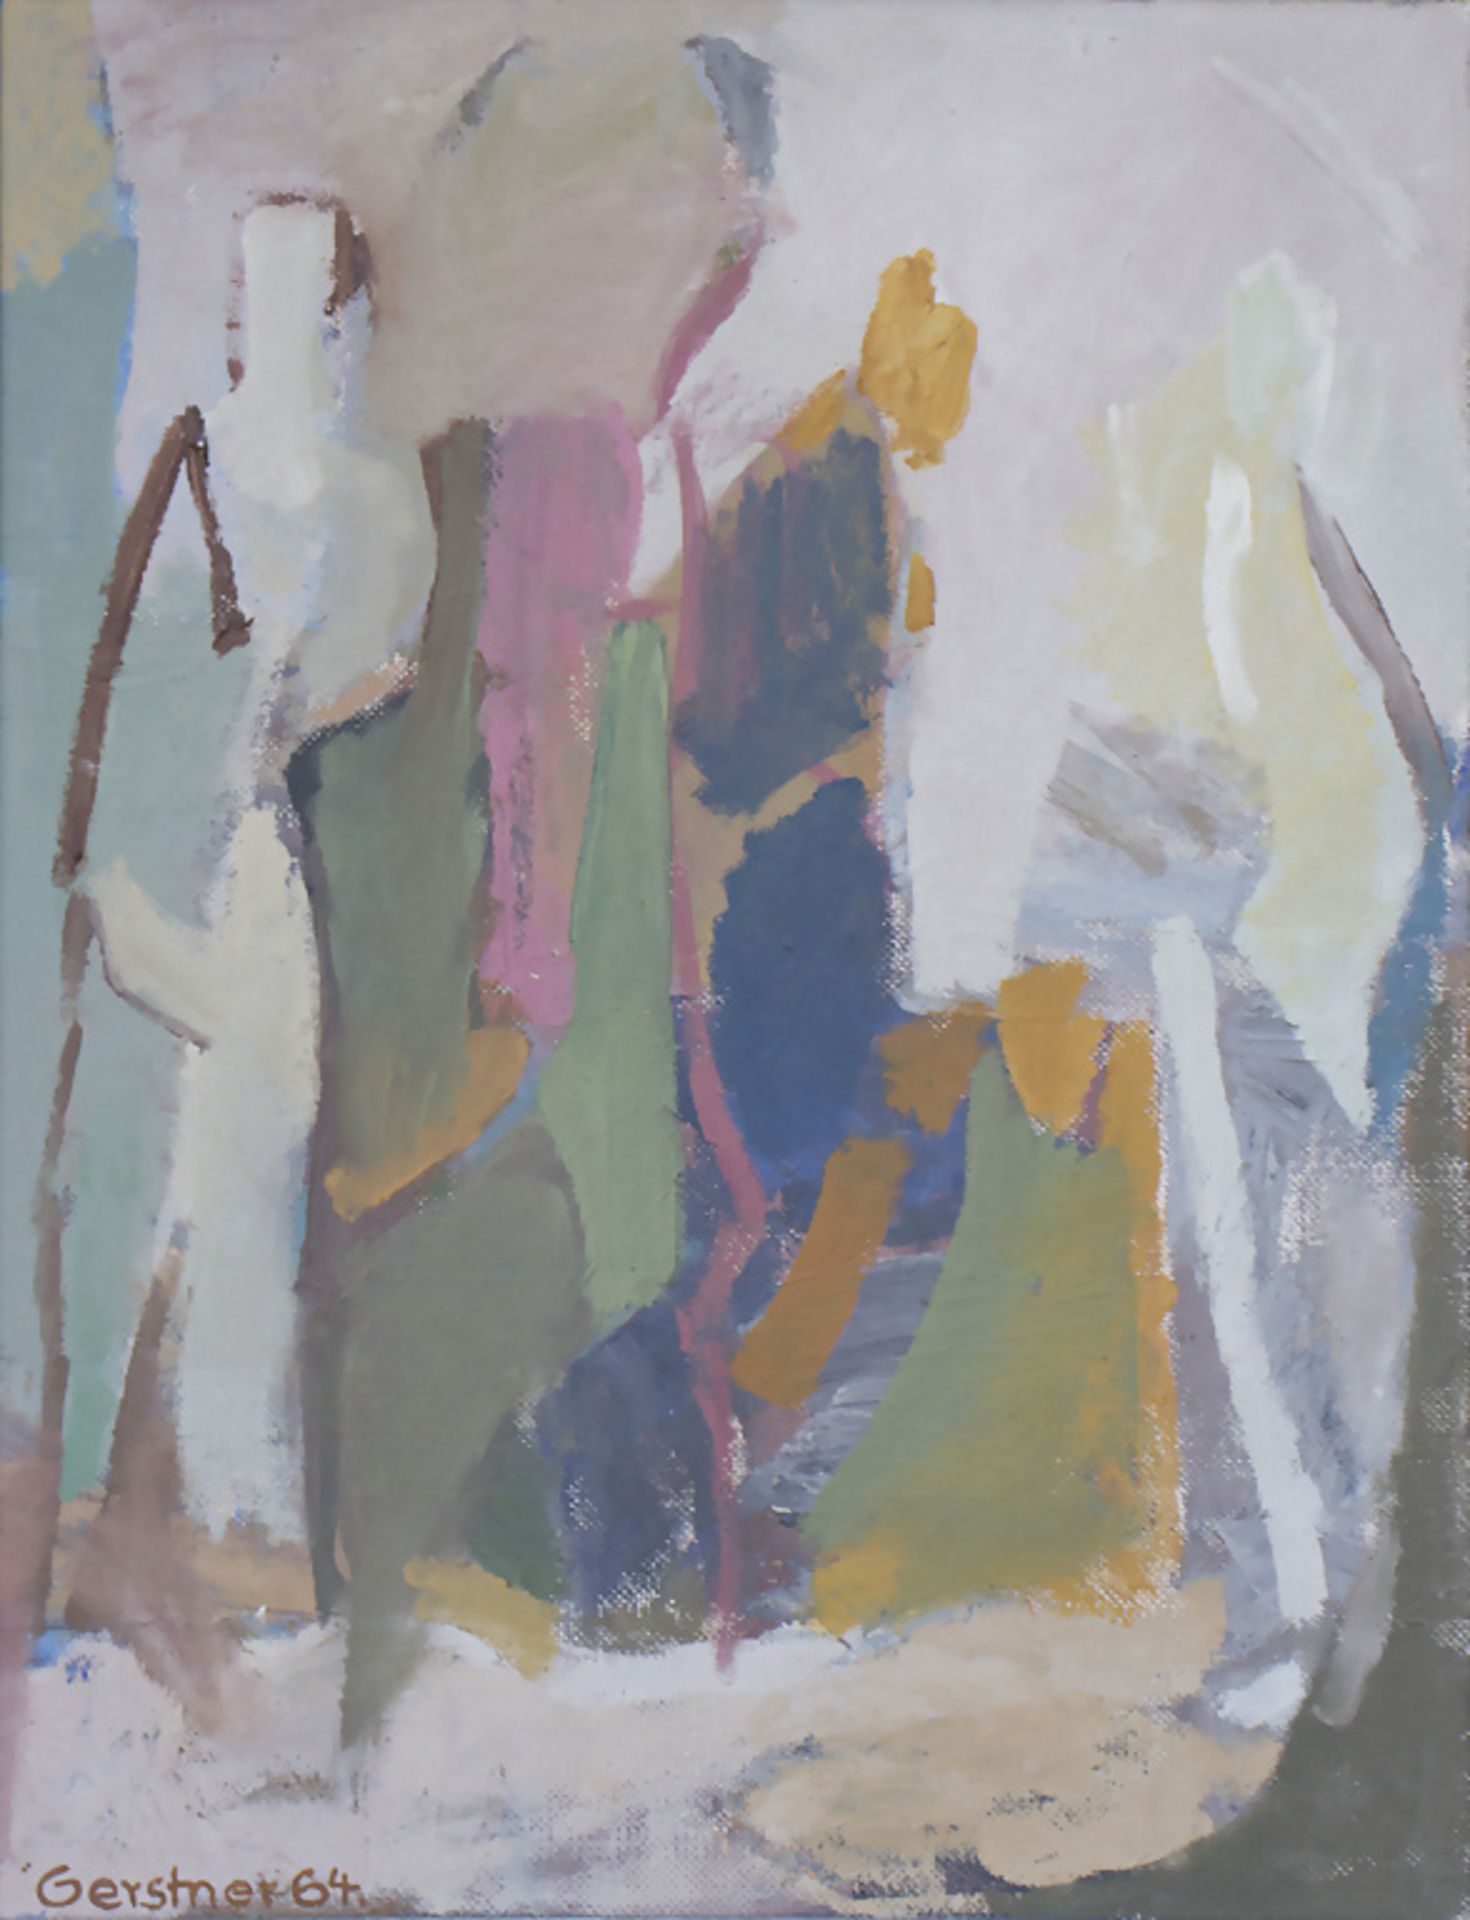 Gerstner, 'Abstrakte, stehende Figuren' / 'Abstract, standing figures', 1964